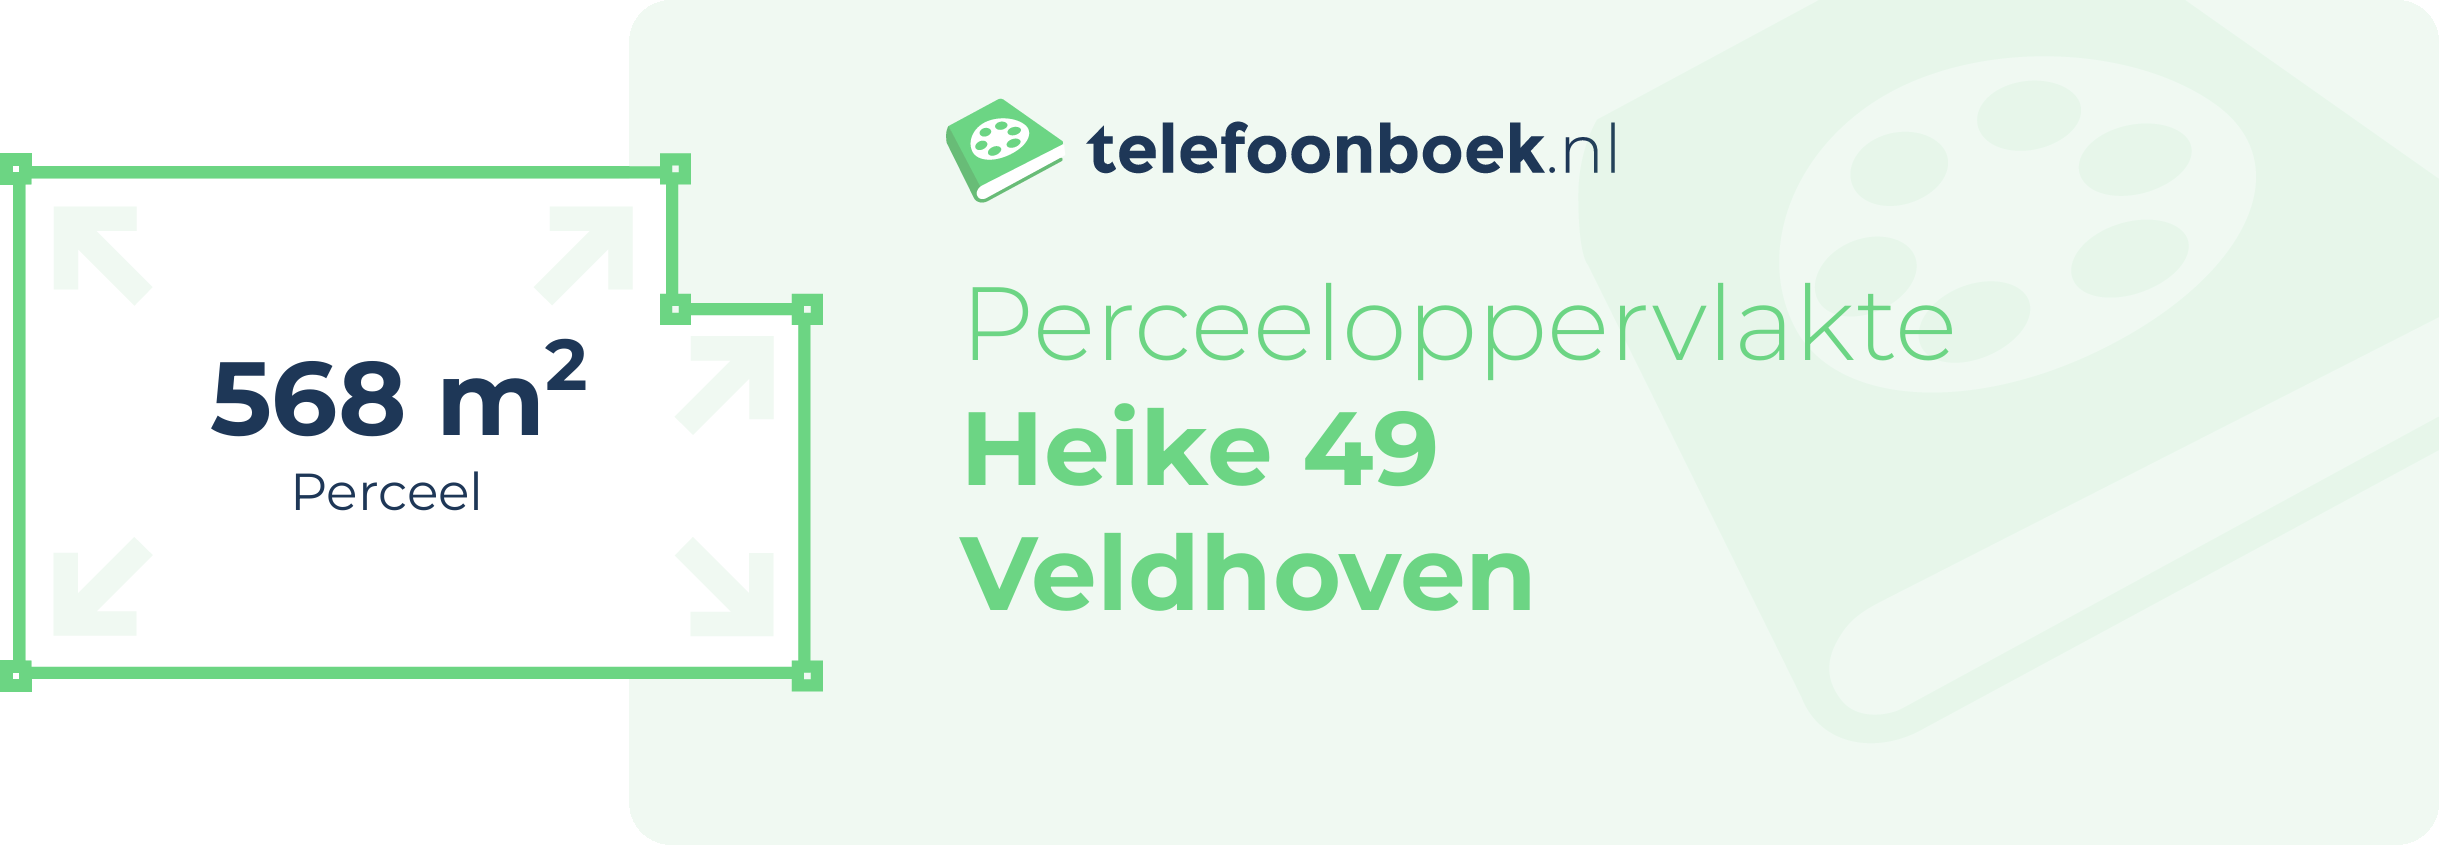 Perceeloppervlakte Heike 49 Veldhoven